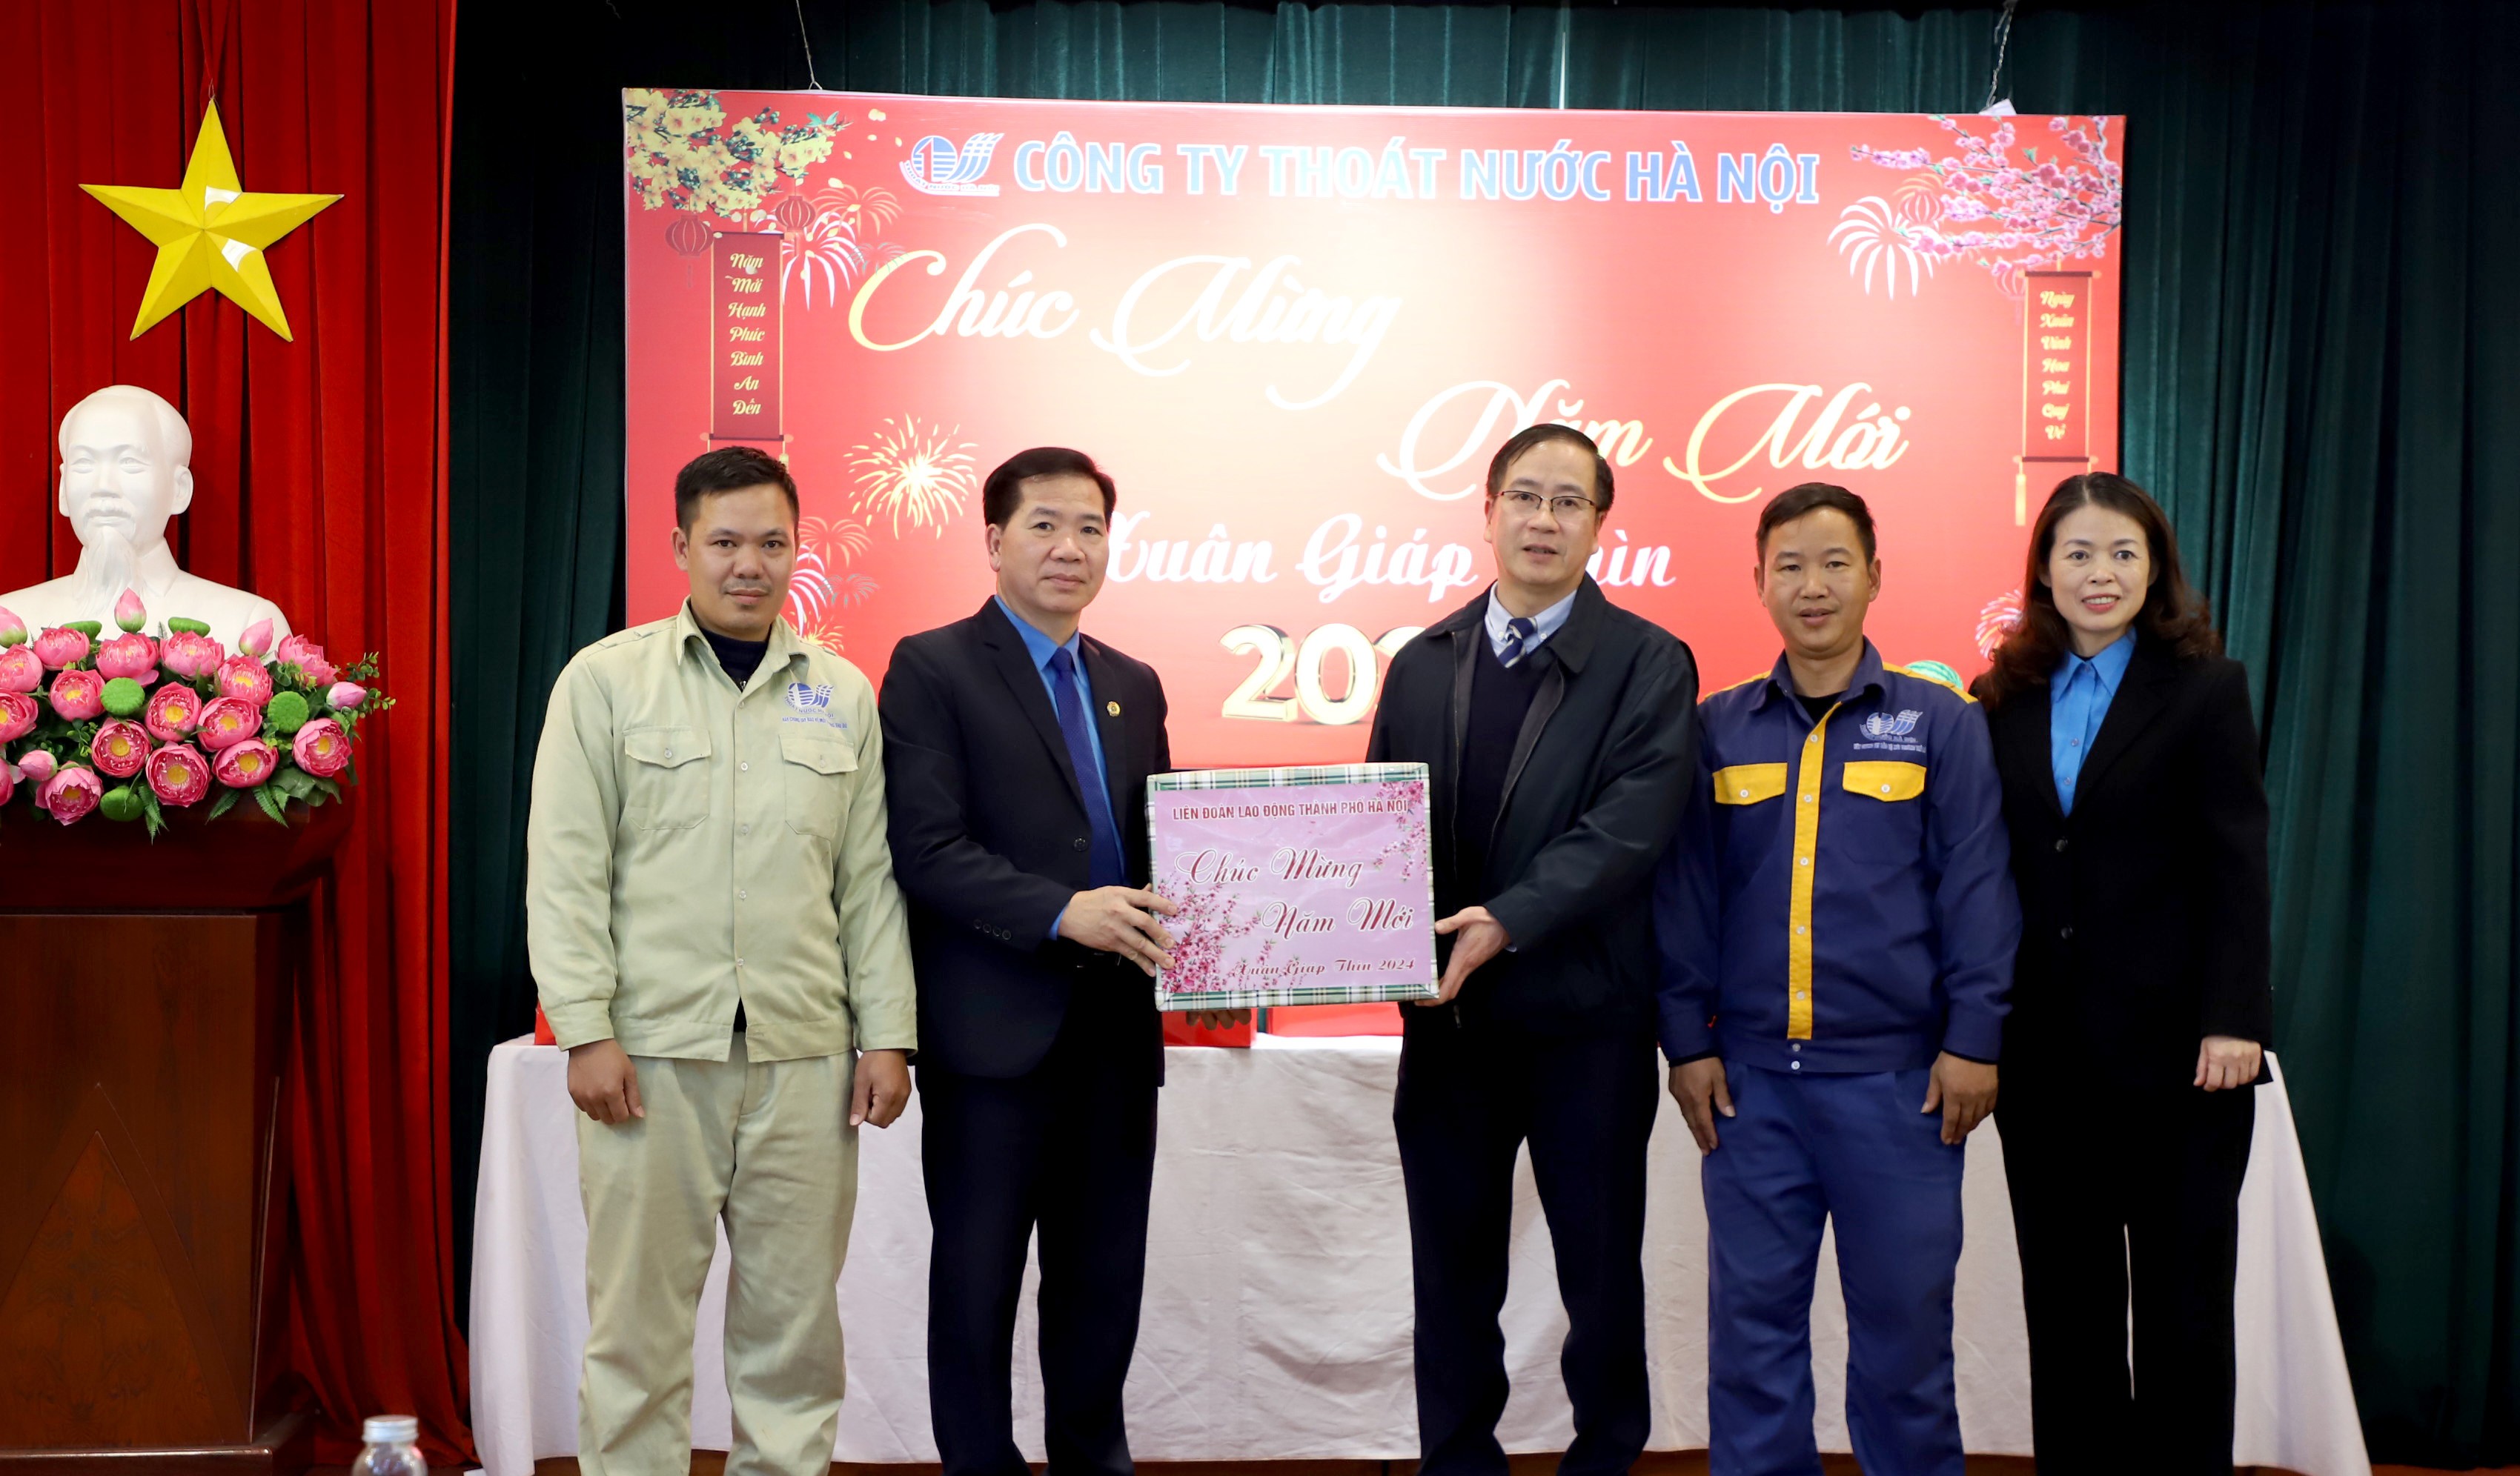 Phó Chủ tịch LĐLĐ thành phố Hà Nội Nguyễn Huy Khánh thăm, tặng quà Tết cho công nhân